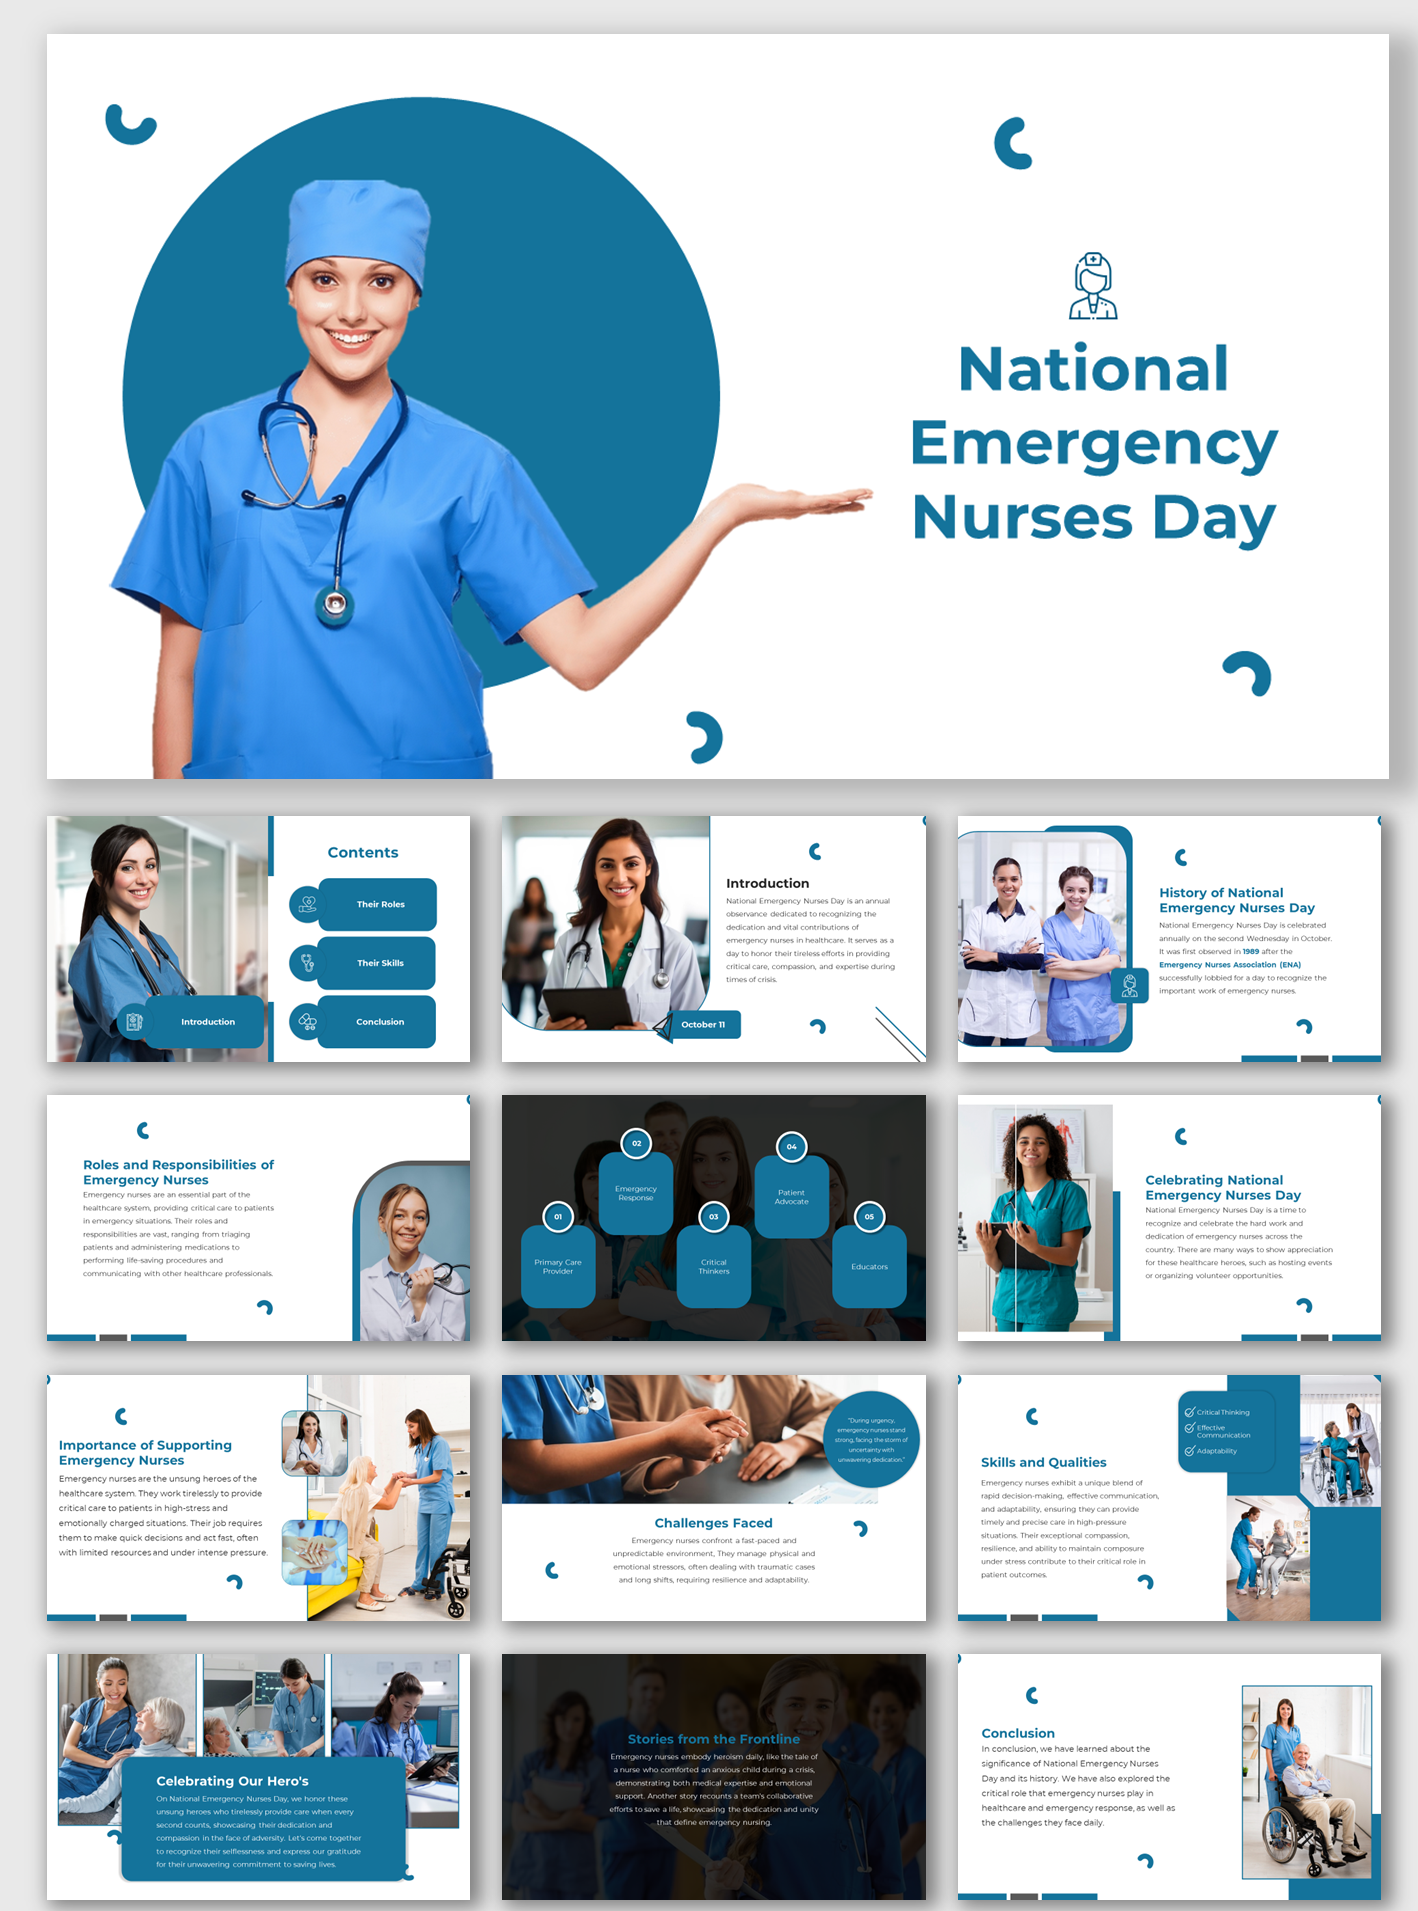 Nurses Appreciation Week: Easy Ways to Show Nurses Appreciation